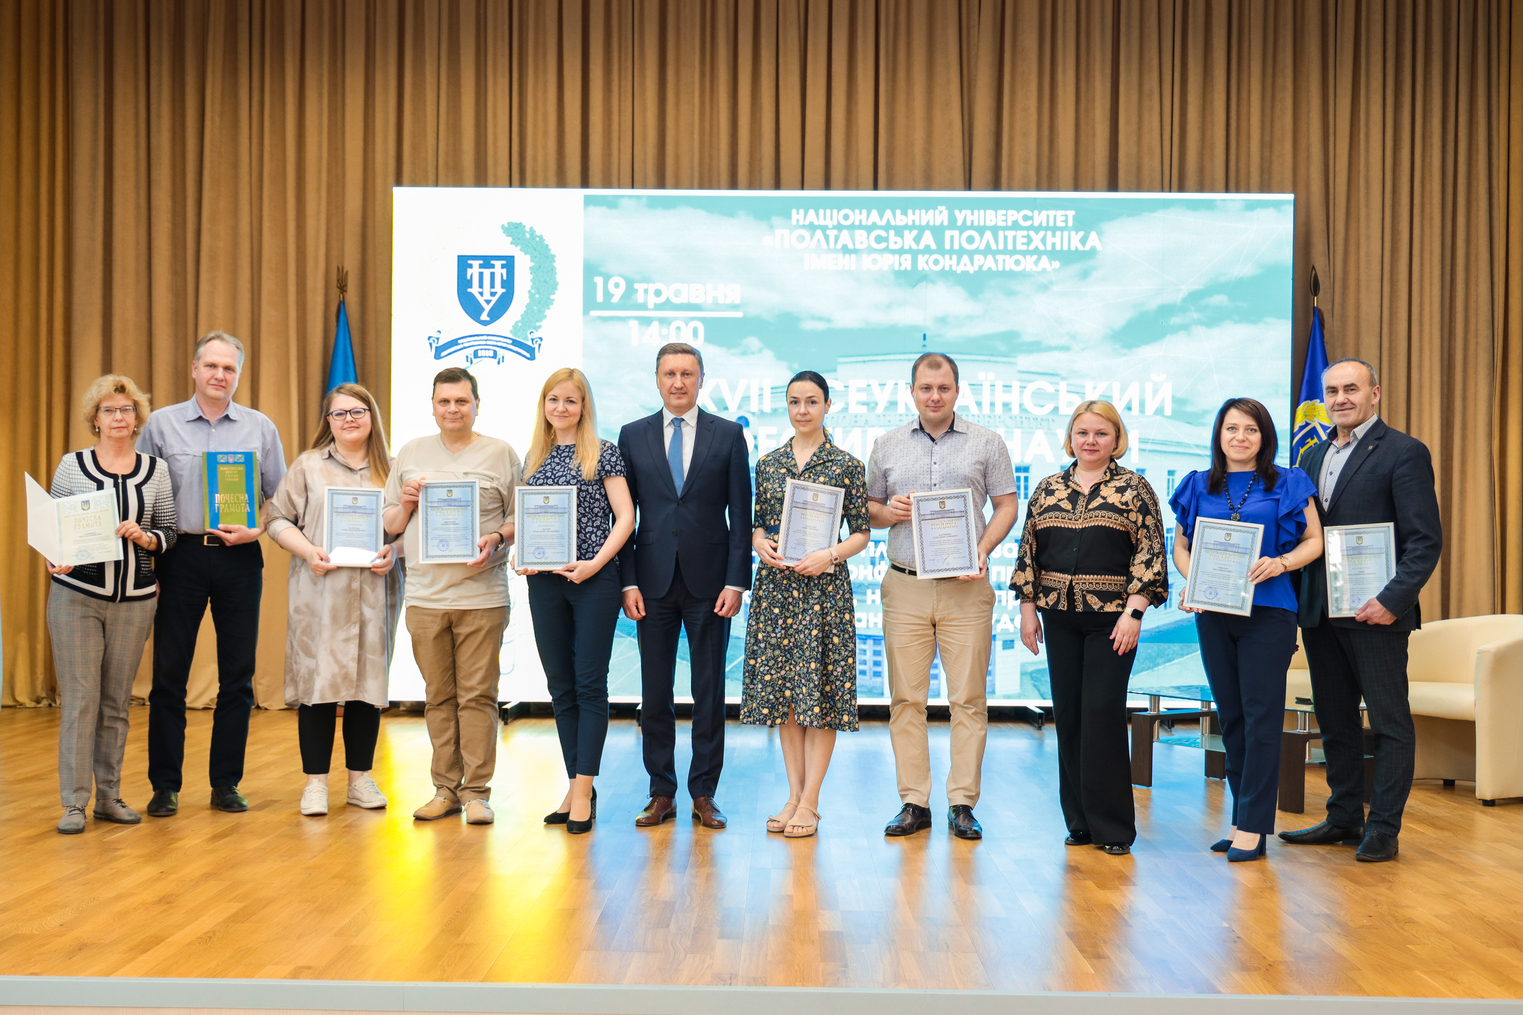 Дні науки в Полтавській політехніці: 10 науковців університету нагородили відзнаками МОН України за плідну науково-педагогічну діяльність 